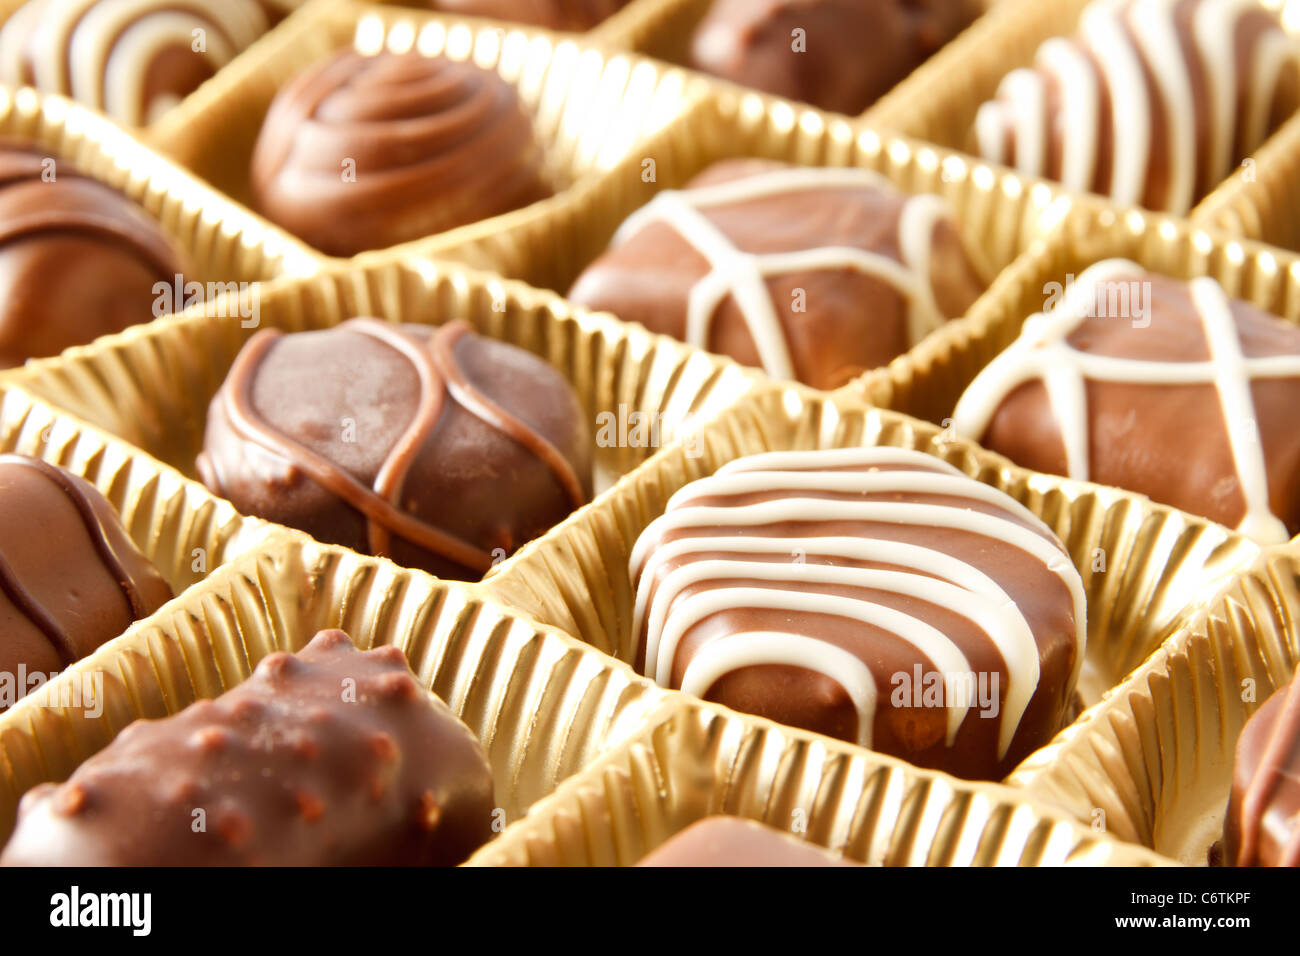 Boite à bonbons Chocolat close up Banque D'Images